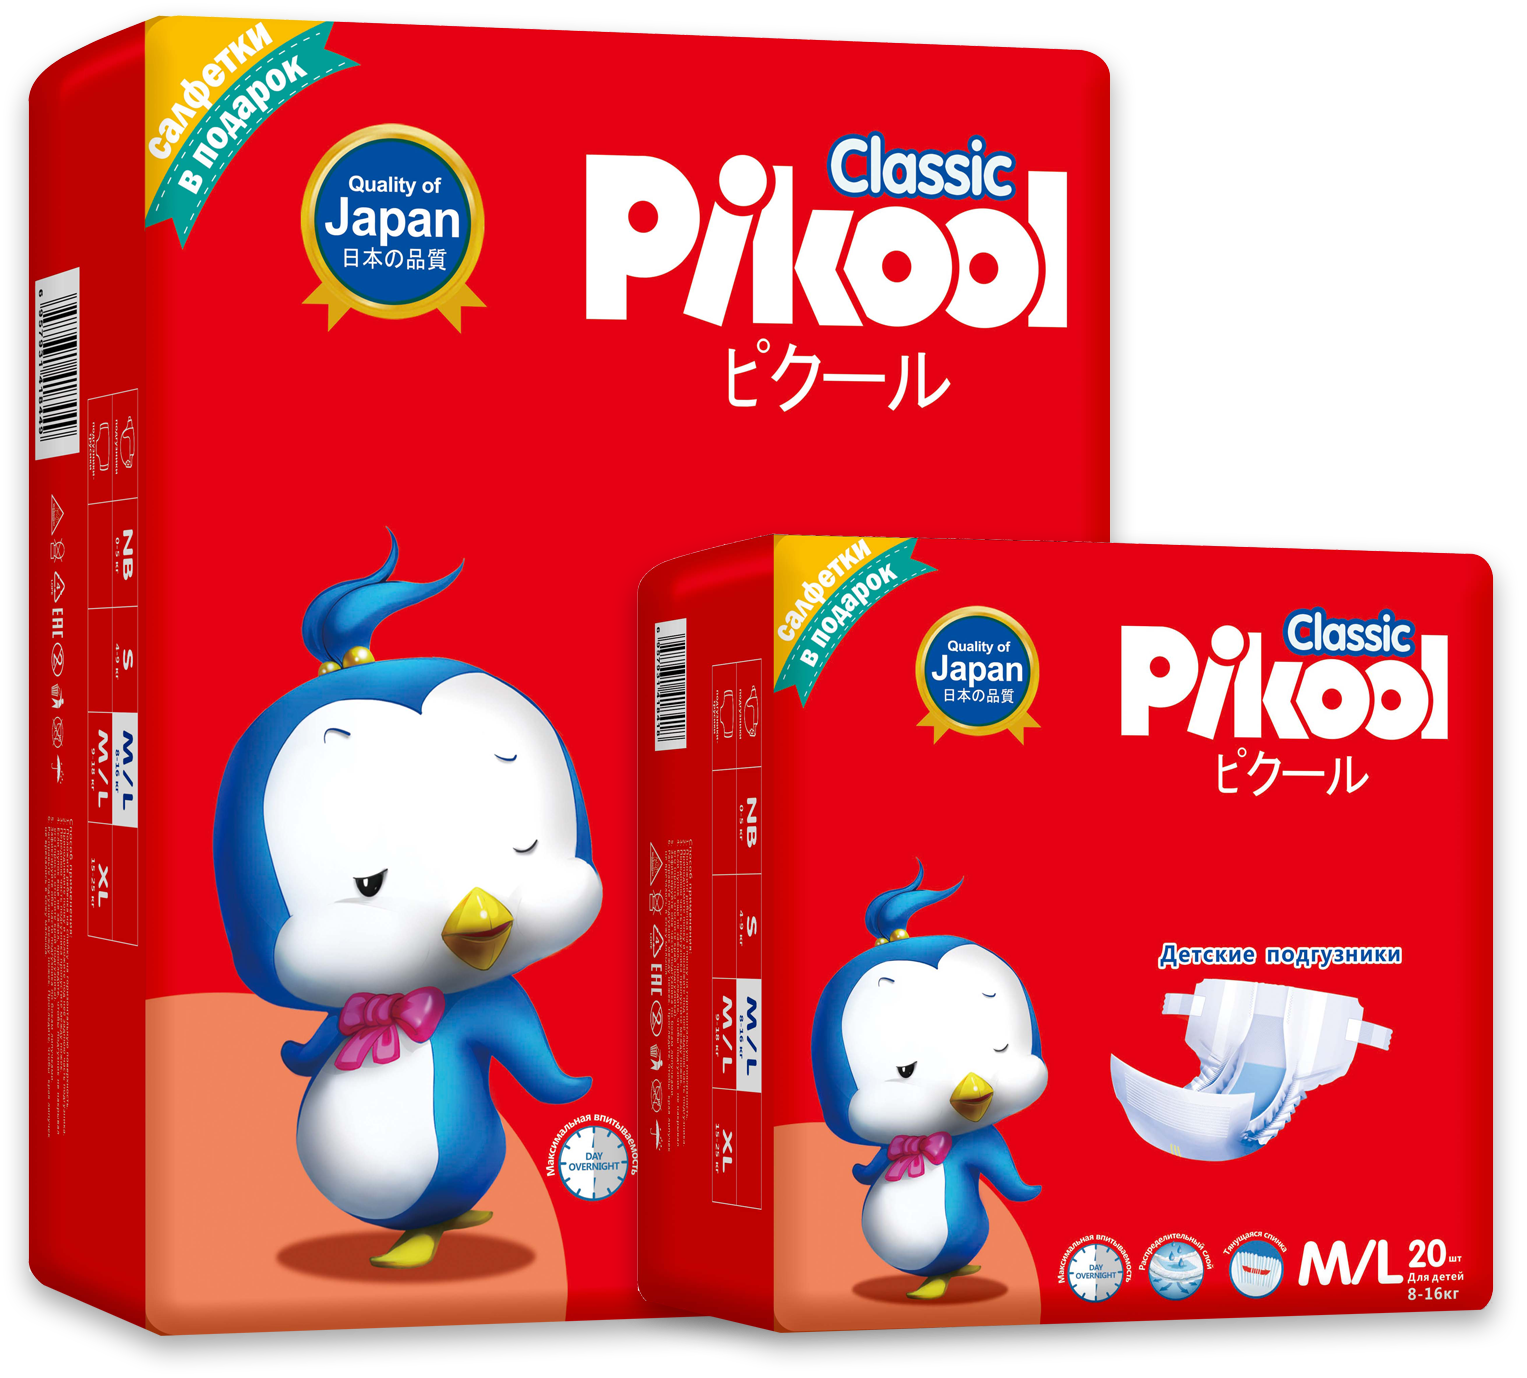 Pikool - подгузники и средства гигиены, японское качество!